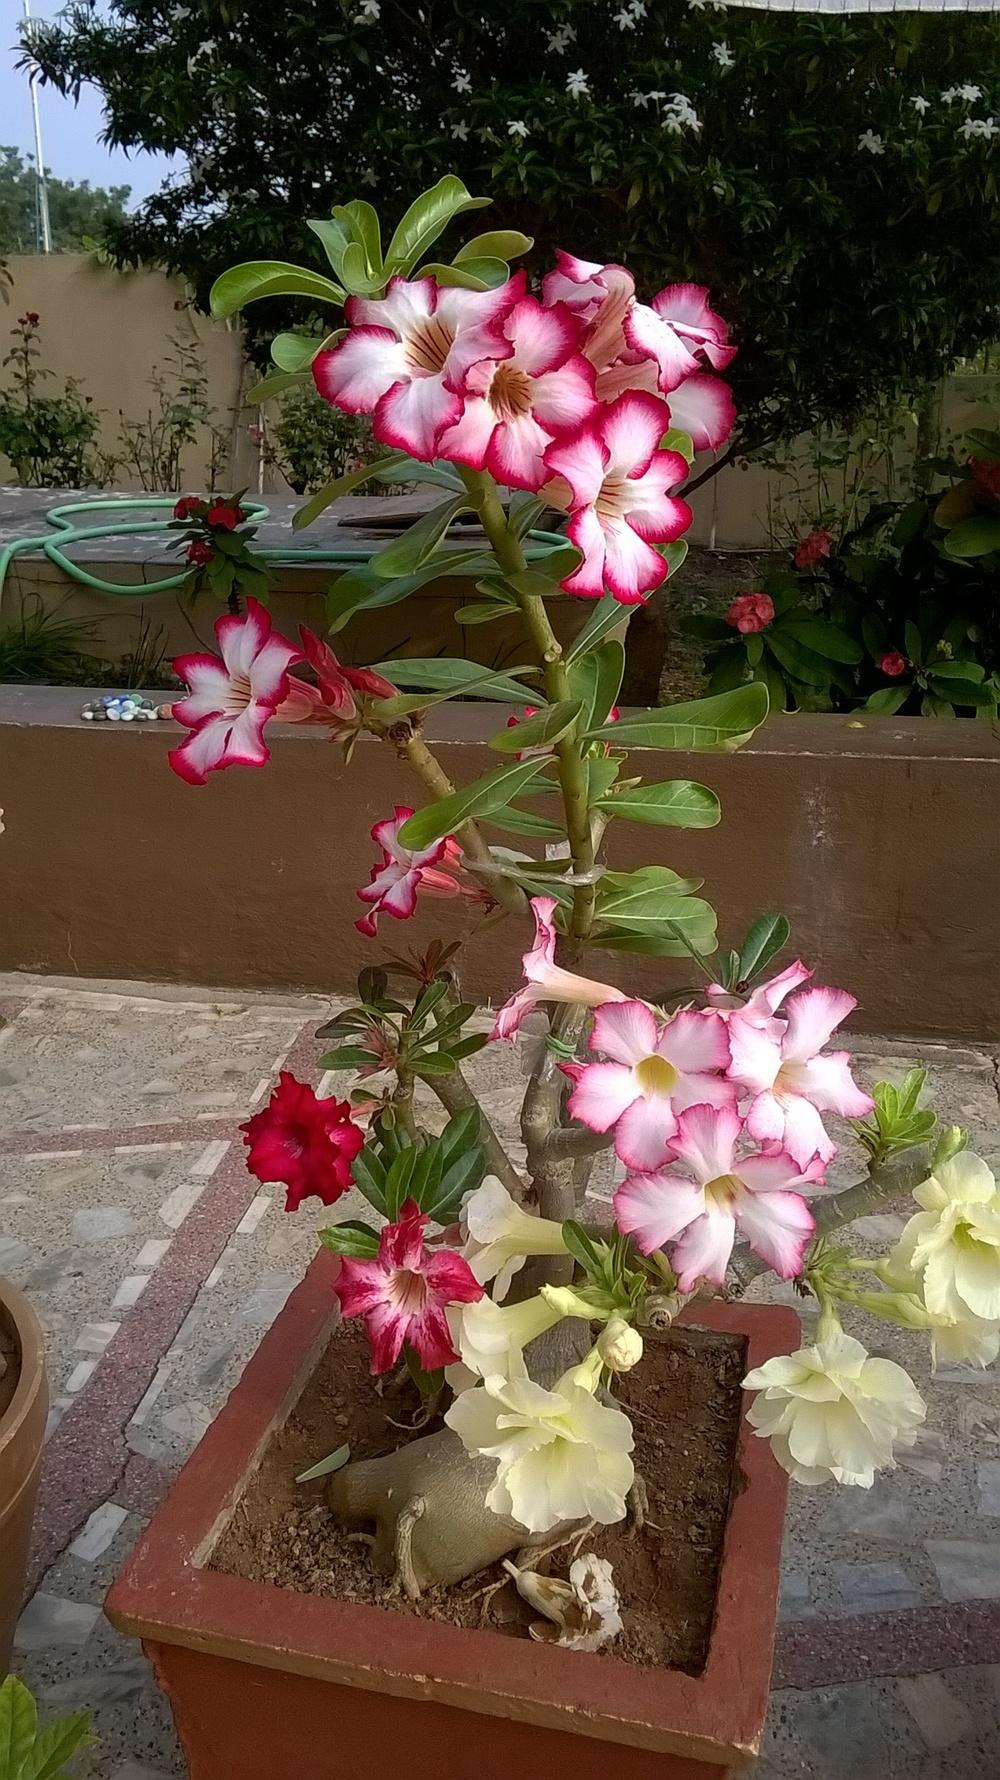 Photo of Desert Rose (Adenium obesum subsp. swazicum) uploaded by chhari55